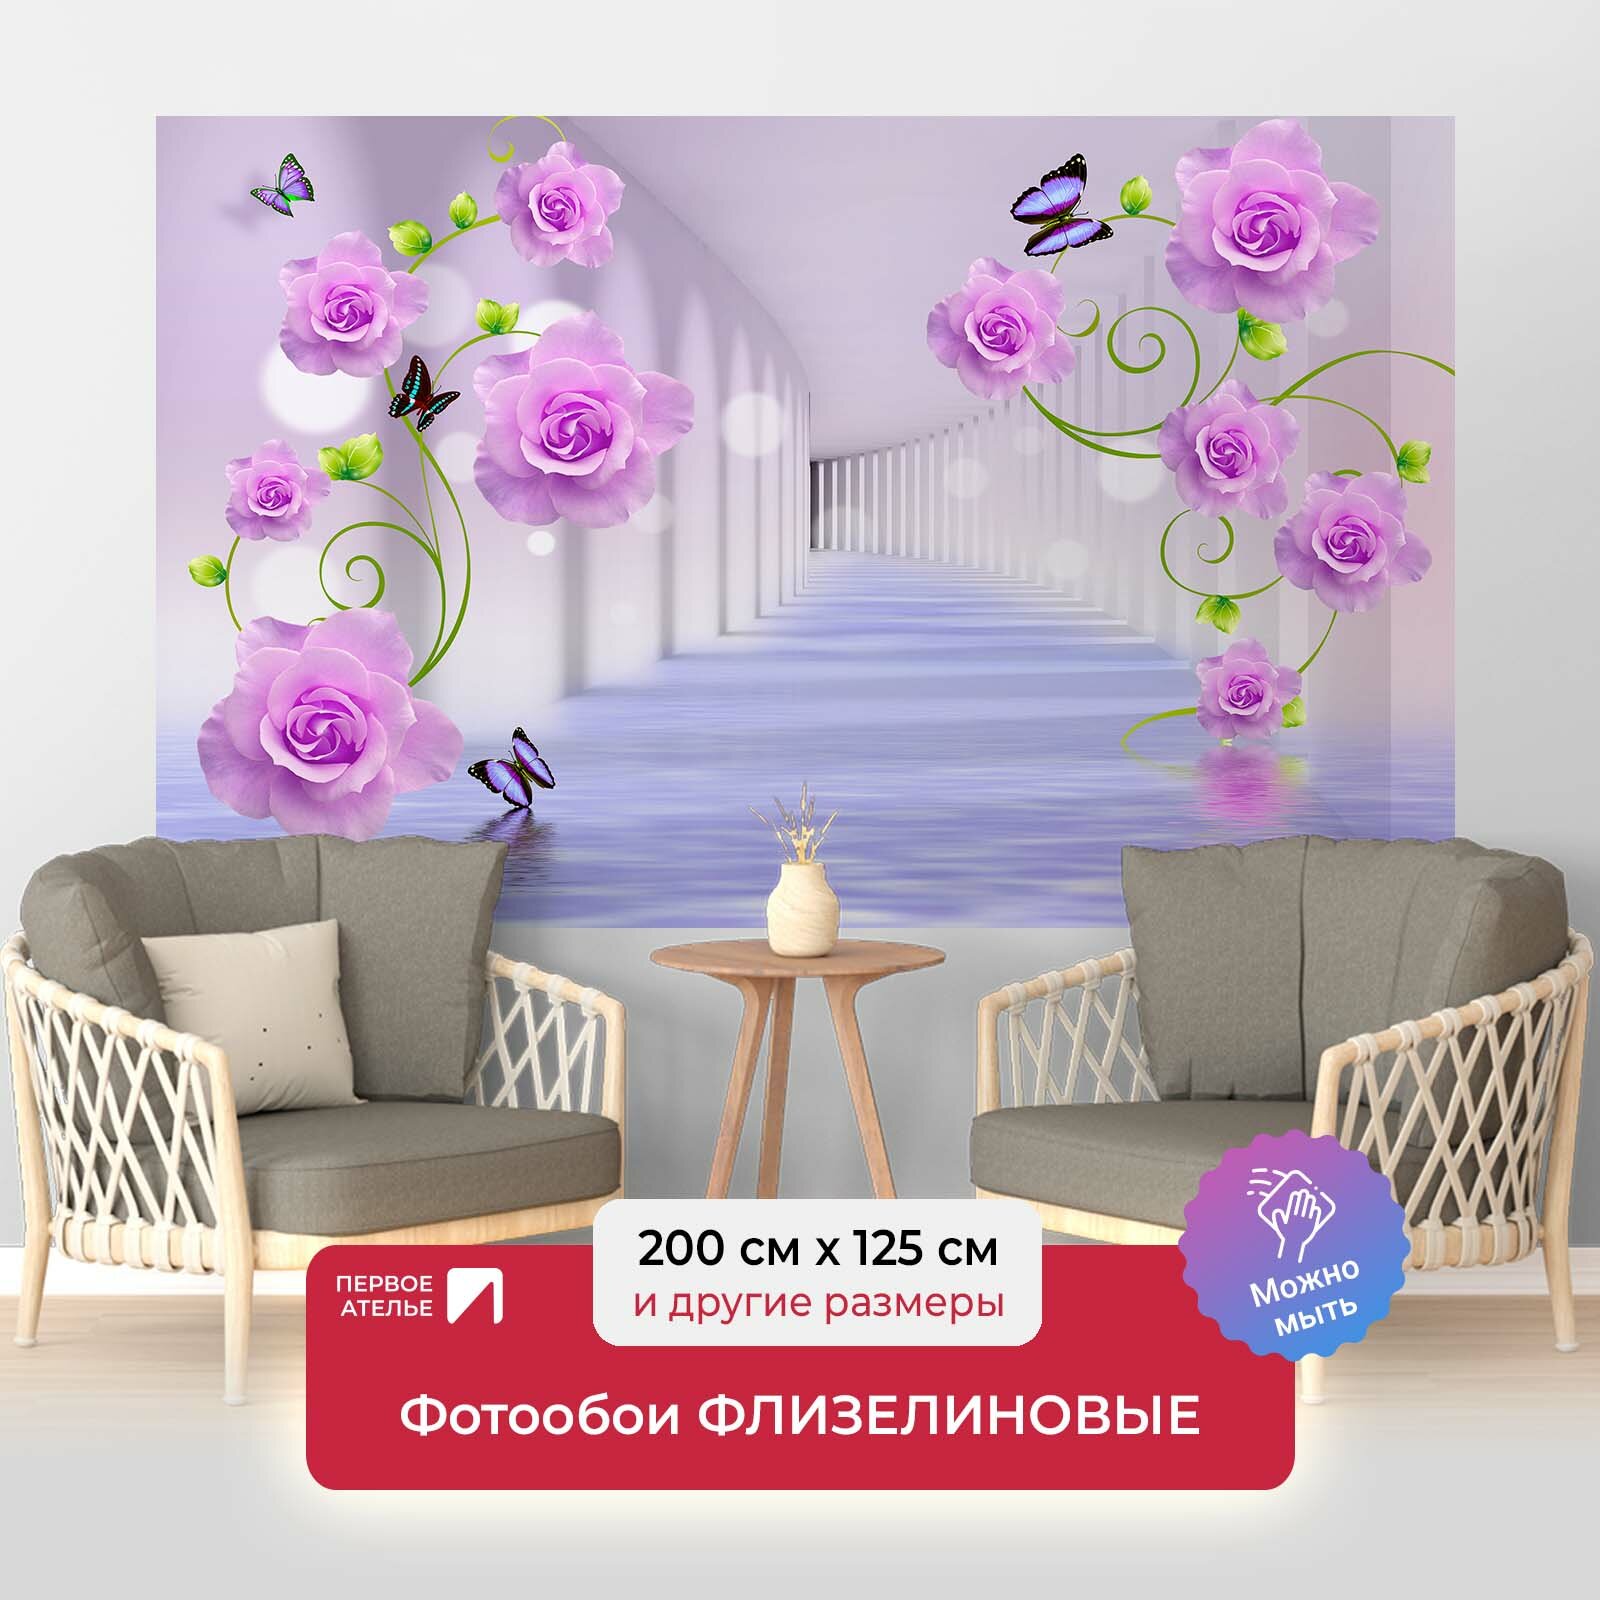 Фотообои на стену первое ателье "Тоннель с розами в воде" 200х125 см (ШхВ), флизелиновые Premium